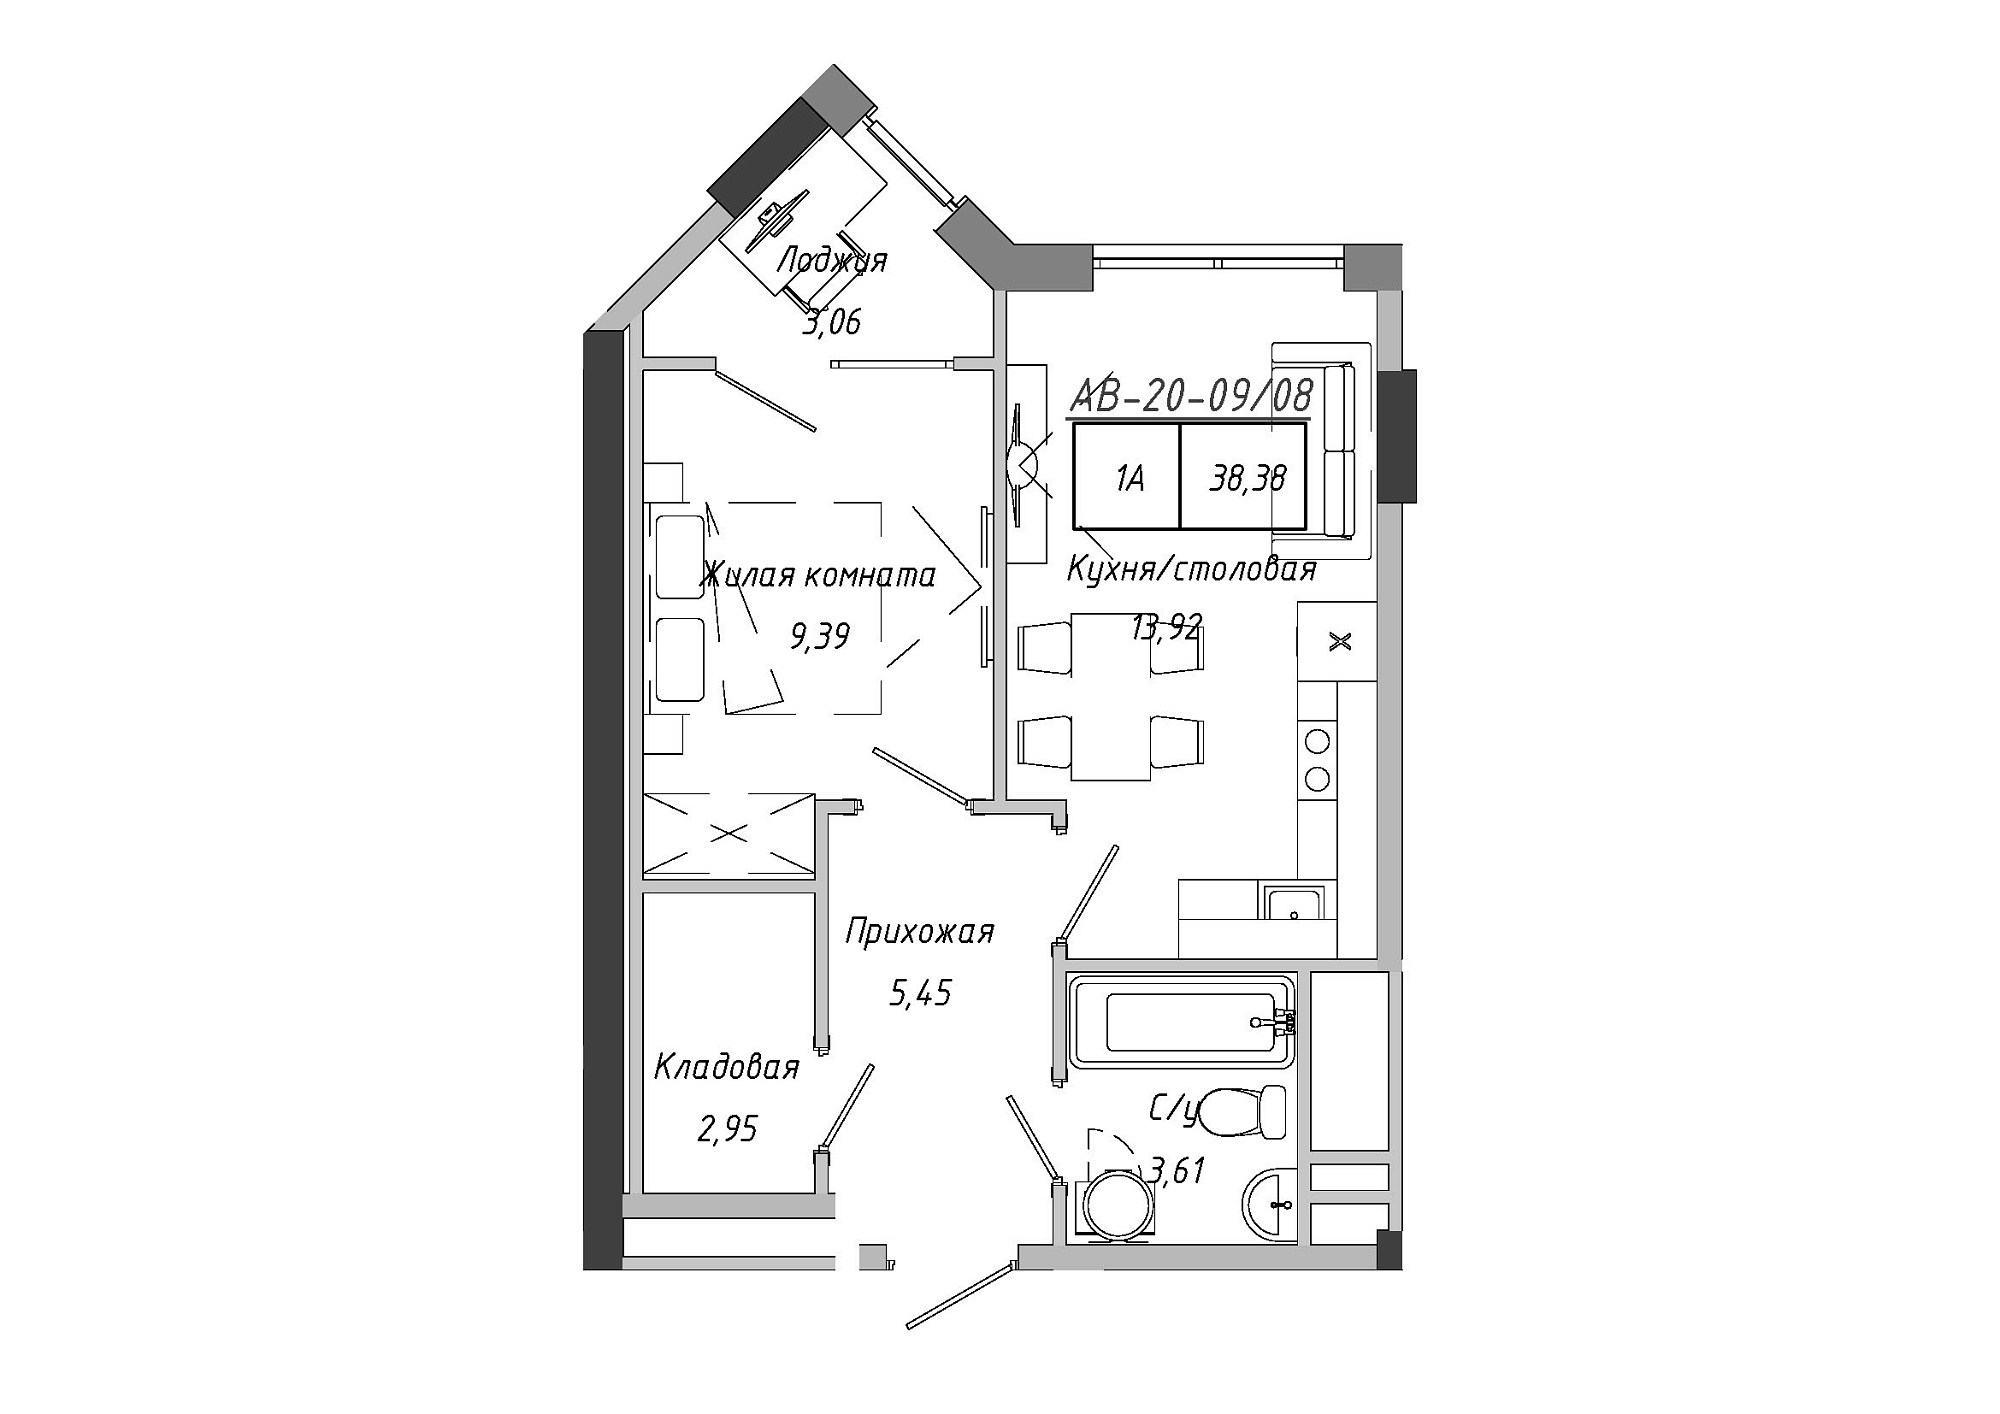 Планировка 1-к квартира площей 38.85м2, AB-20-09/00008.